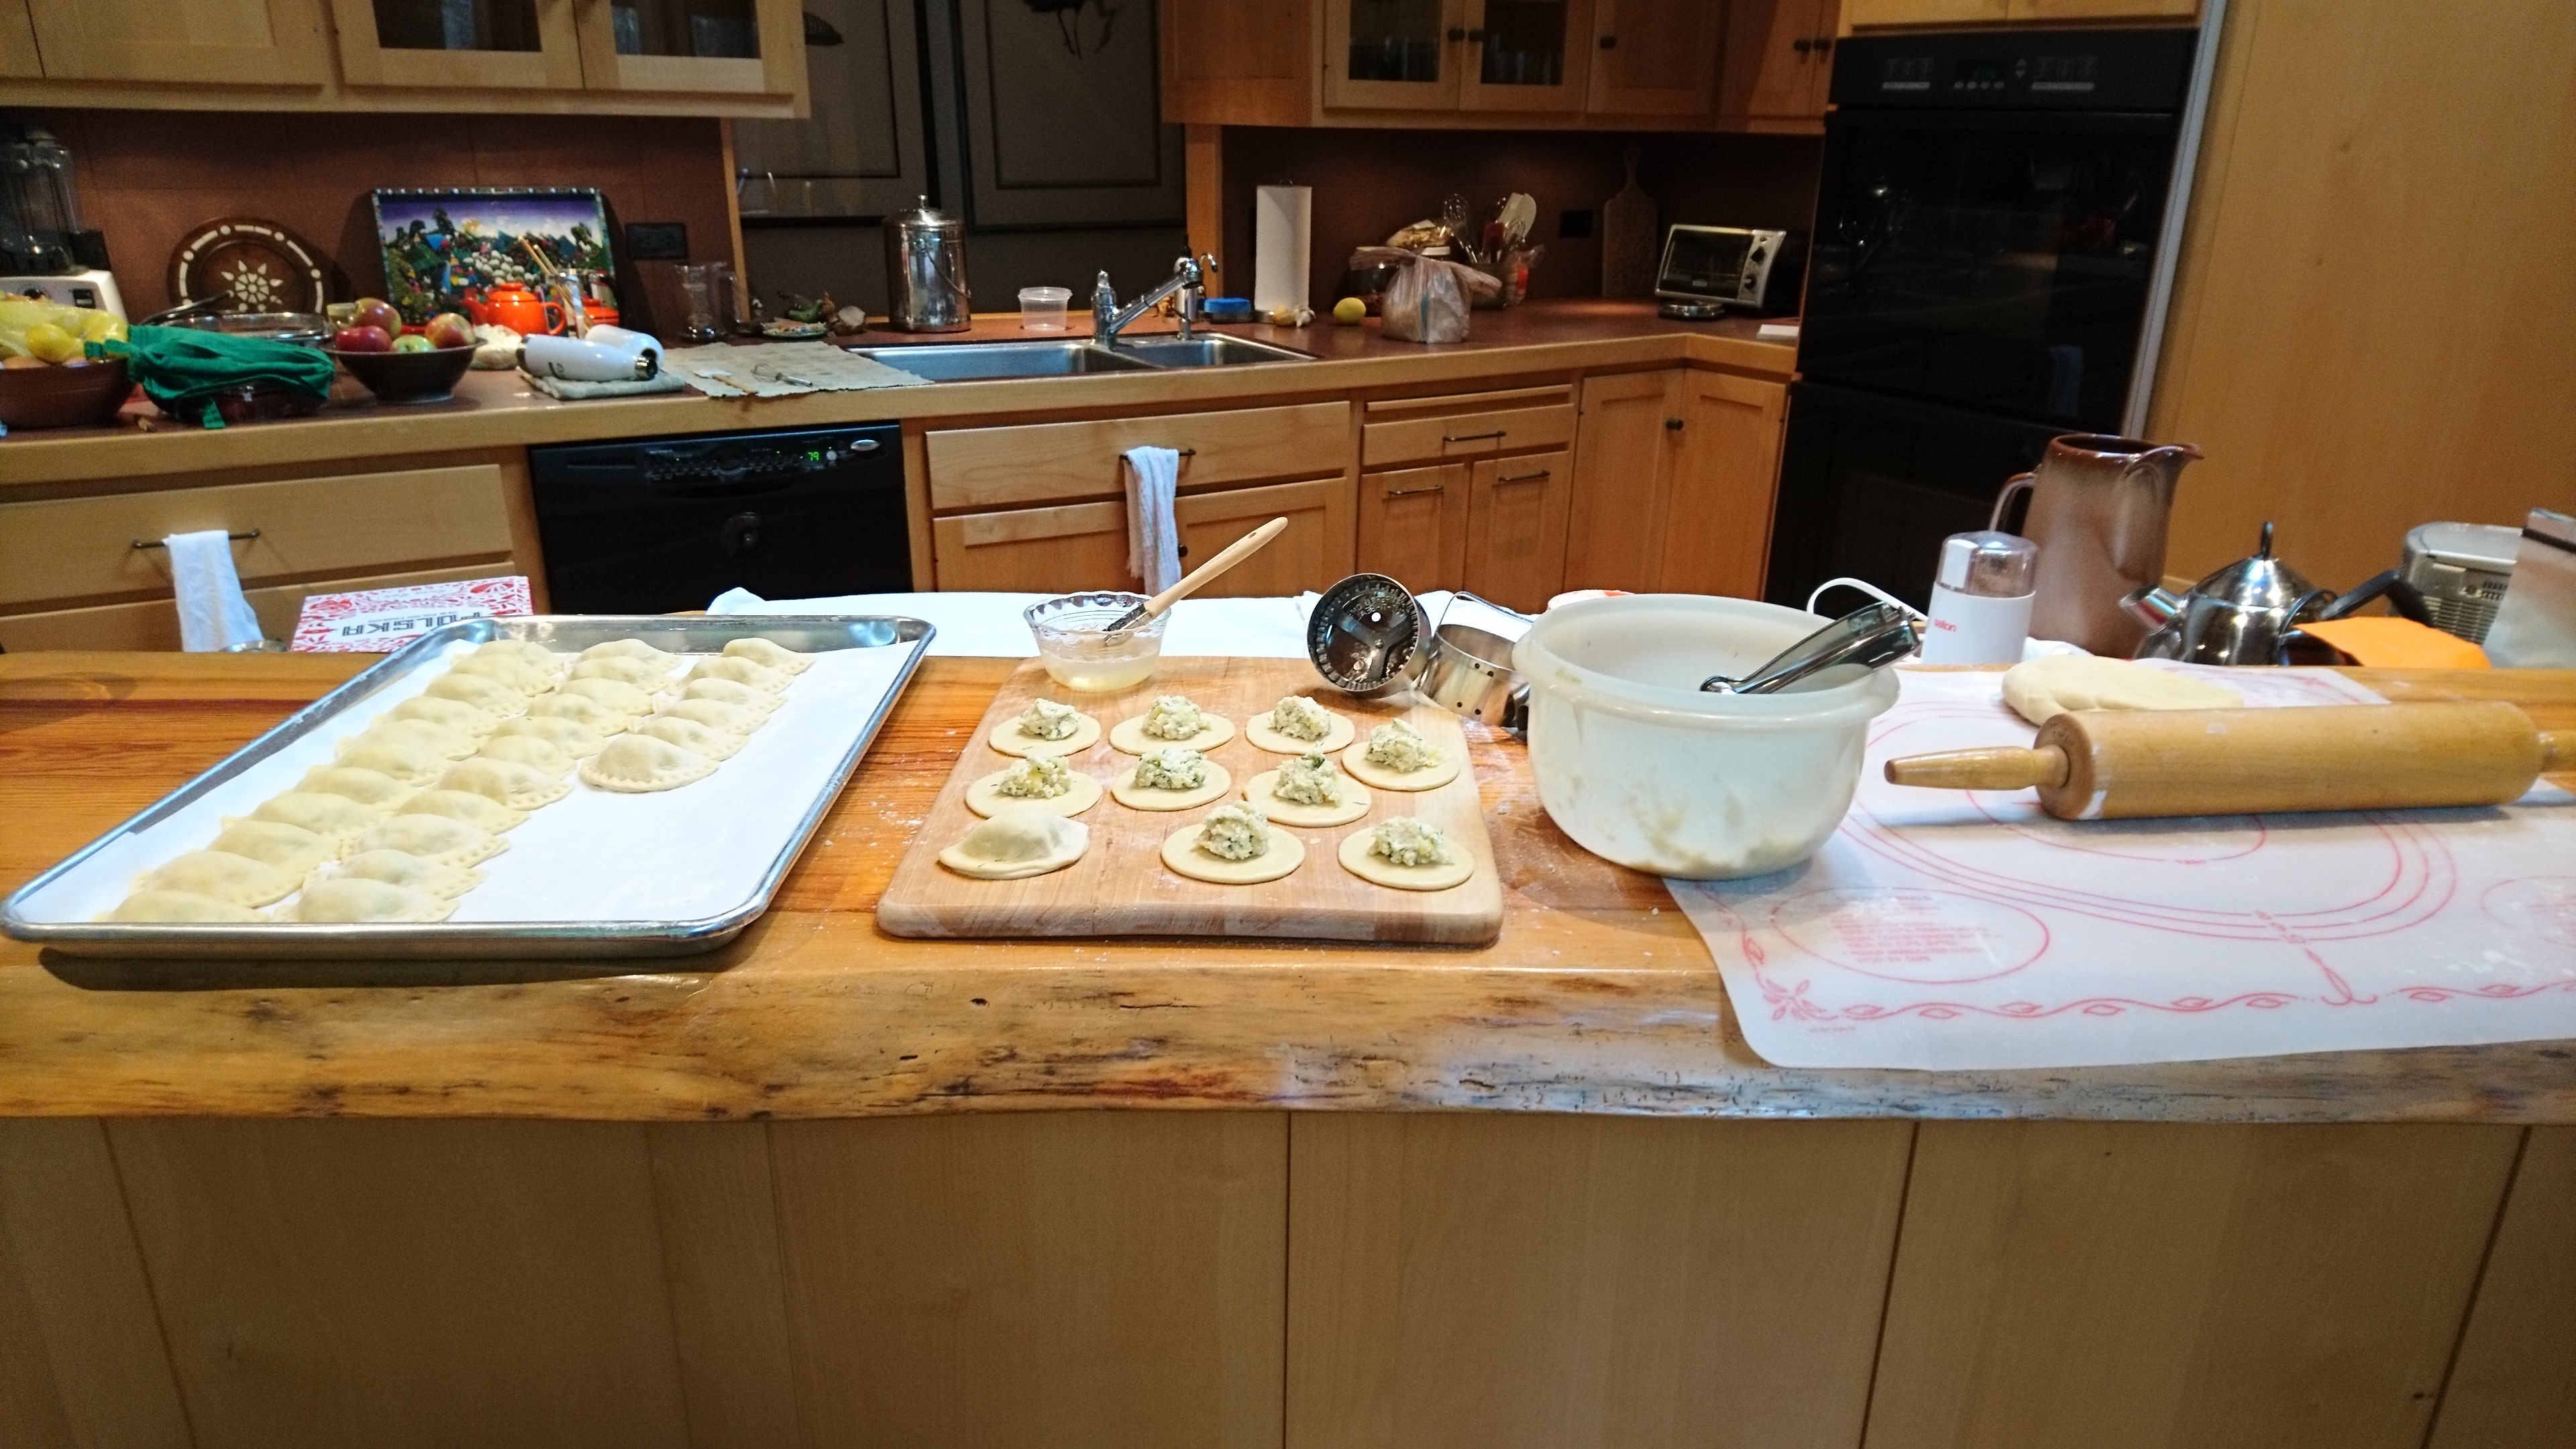 dumpling-making setup